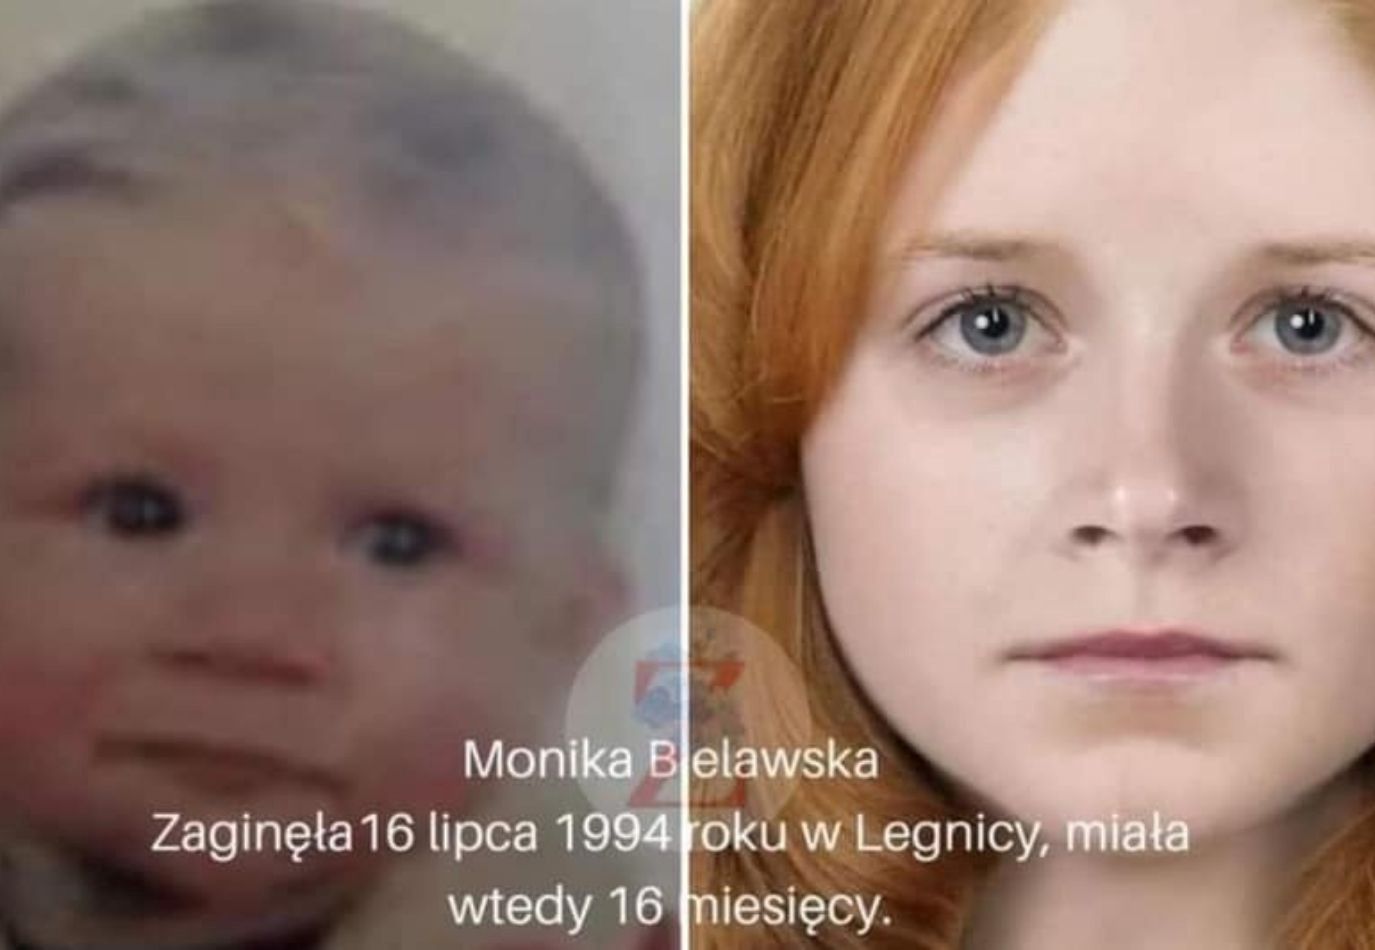 27-latka z USA myślała, że jest zaginioną z Legnicy. Prawda wyszła na jaw